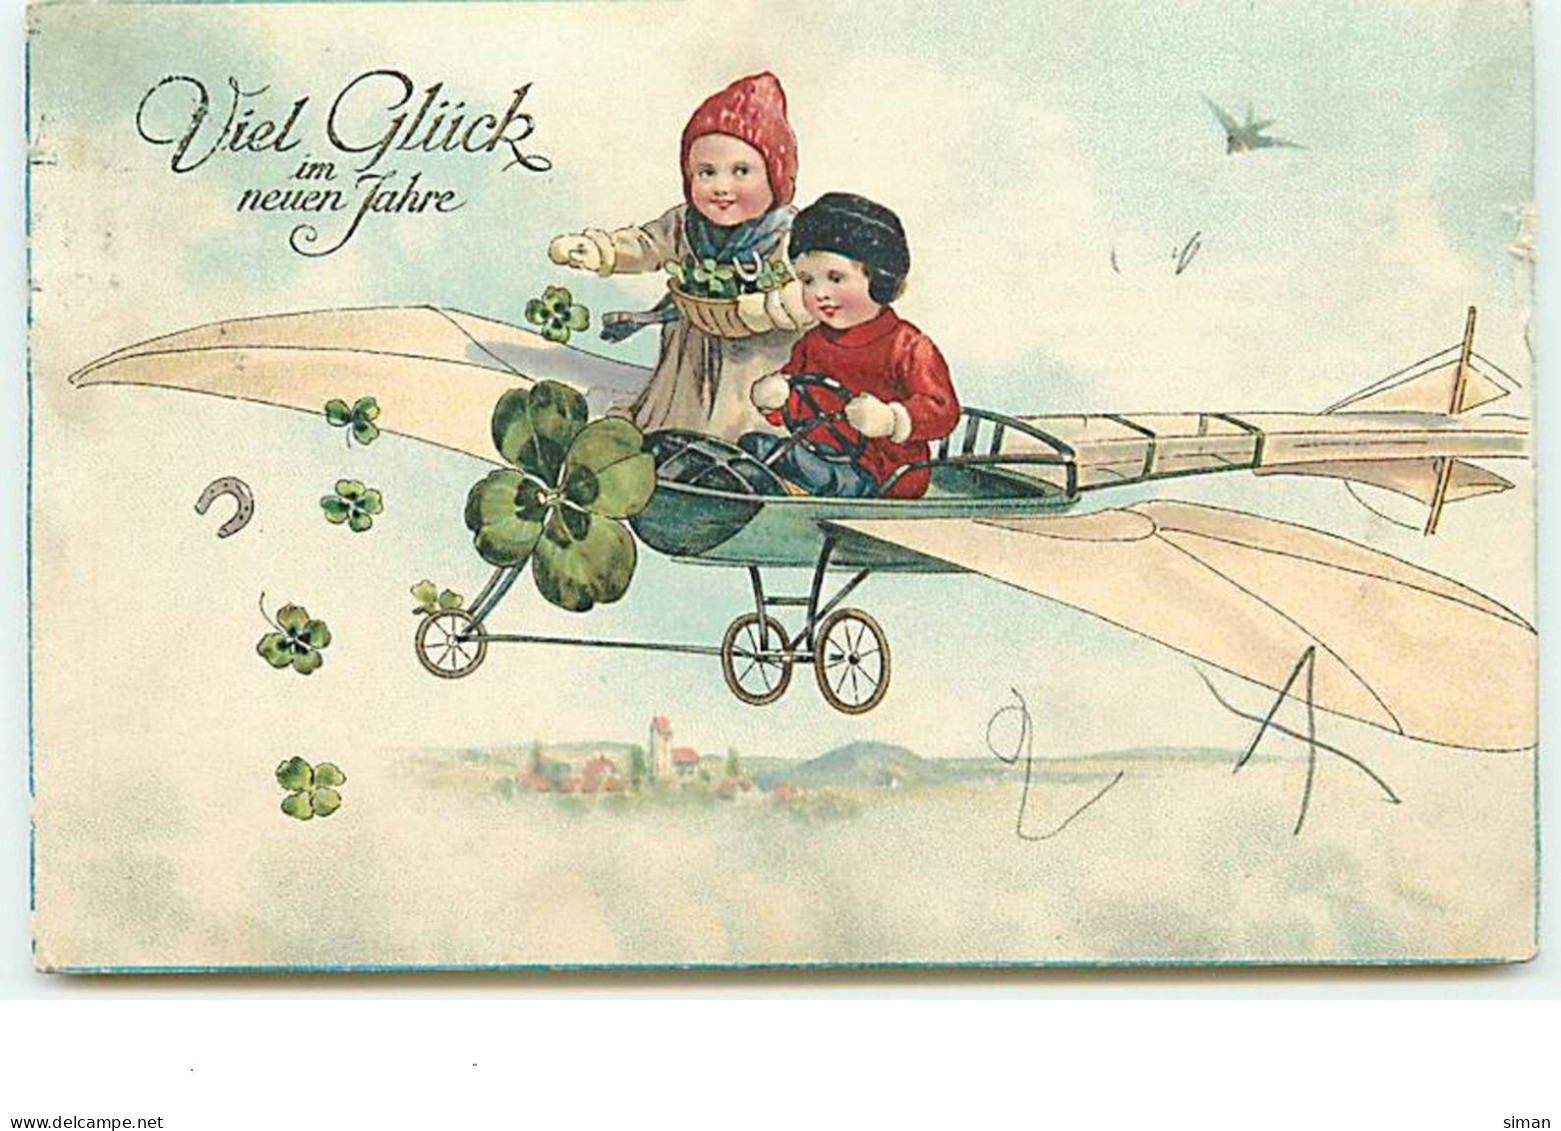 N°13888 - Viel Glück Im Nueun Jahre - Enfants Dans Un Avion, Lançant Des Portes-bonheur - Anno Nuovo